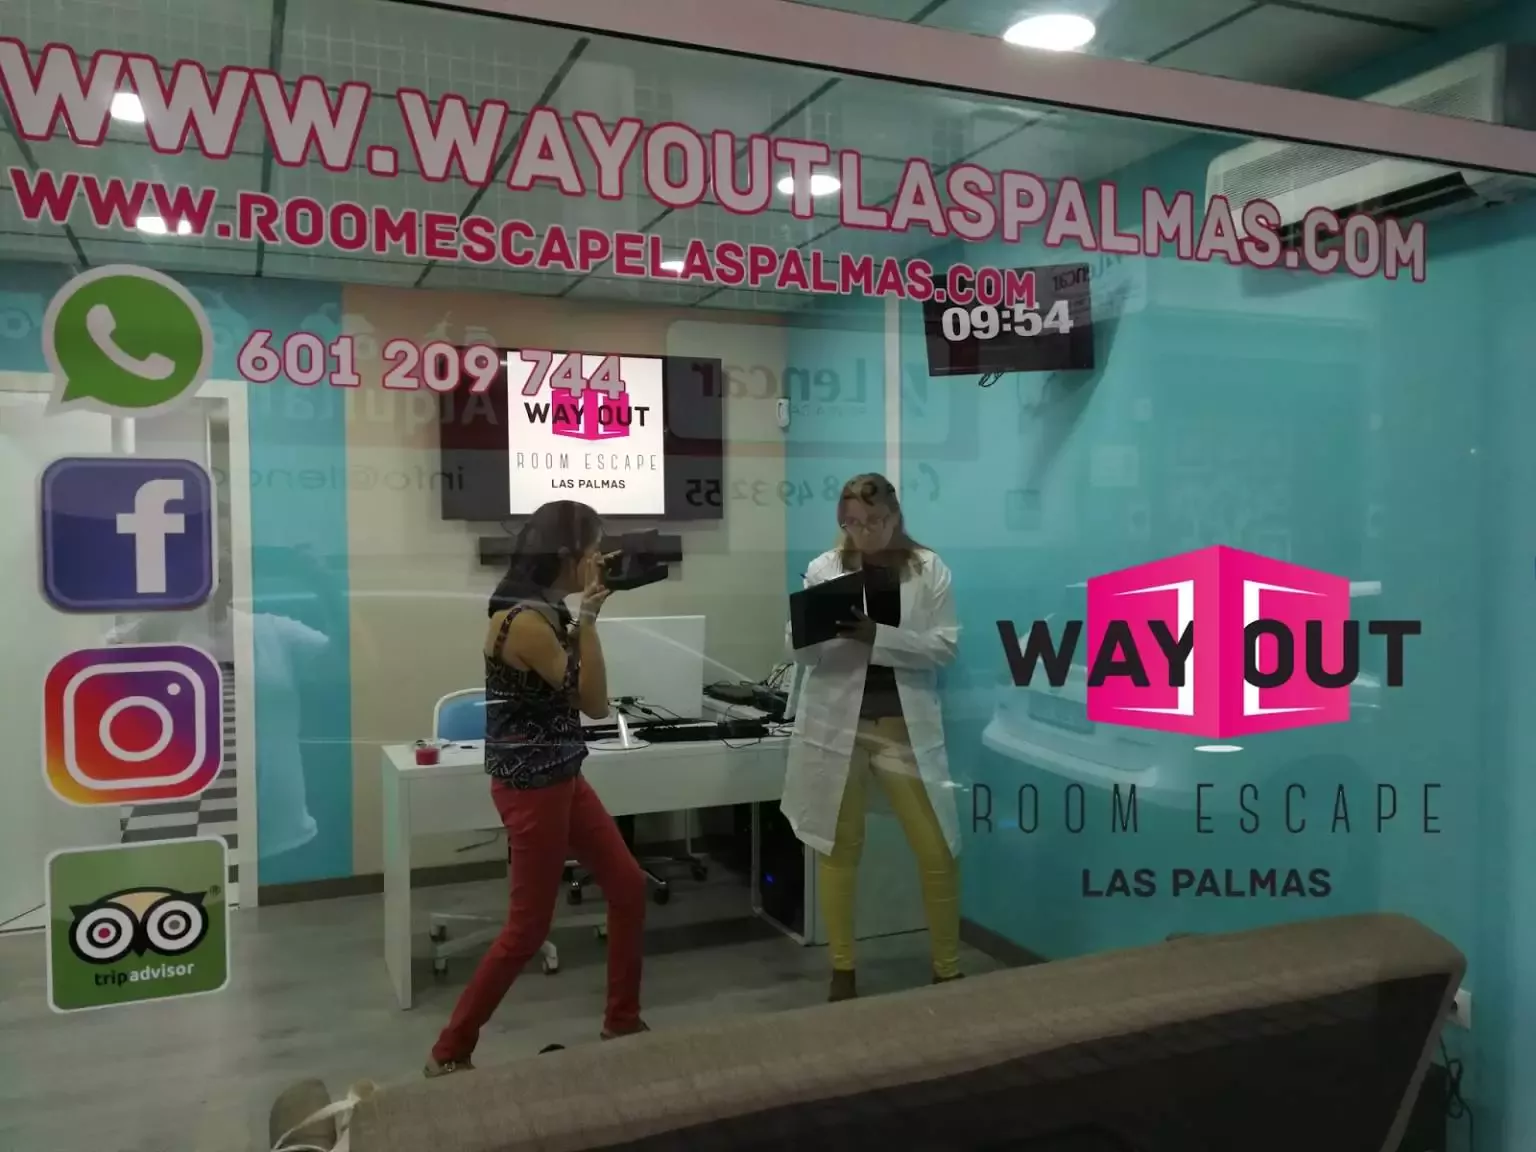 1. Wayout room escape Las Palmas